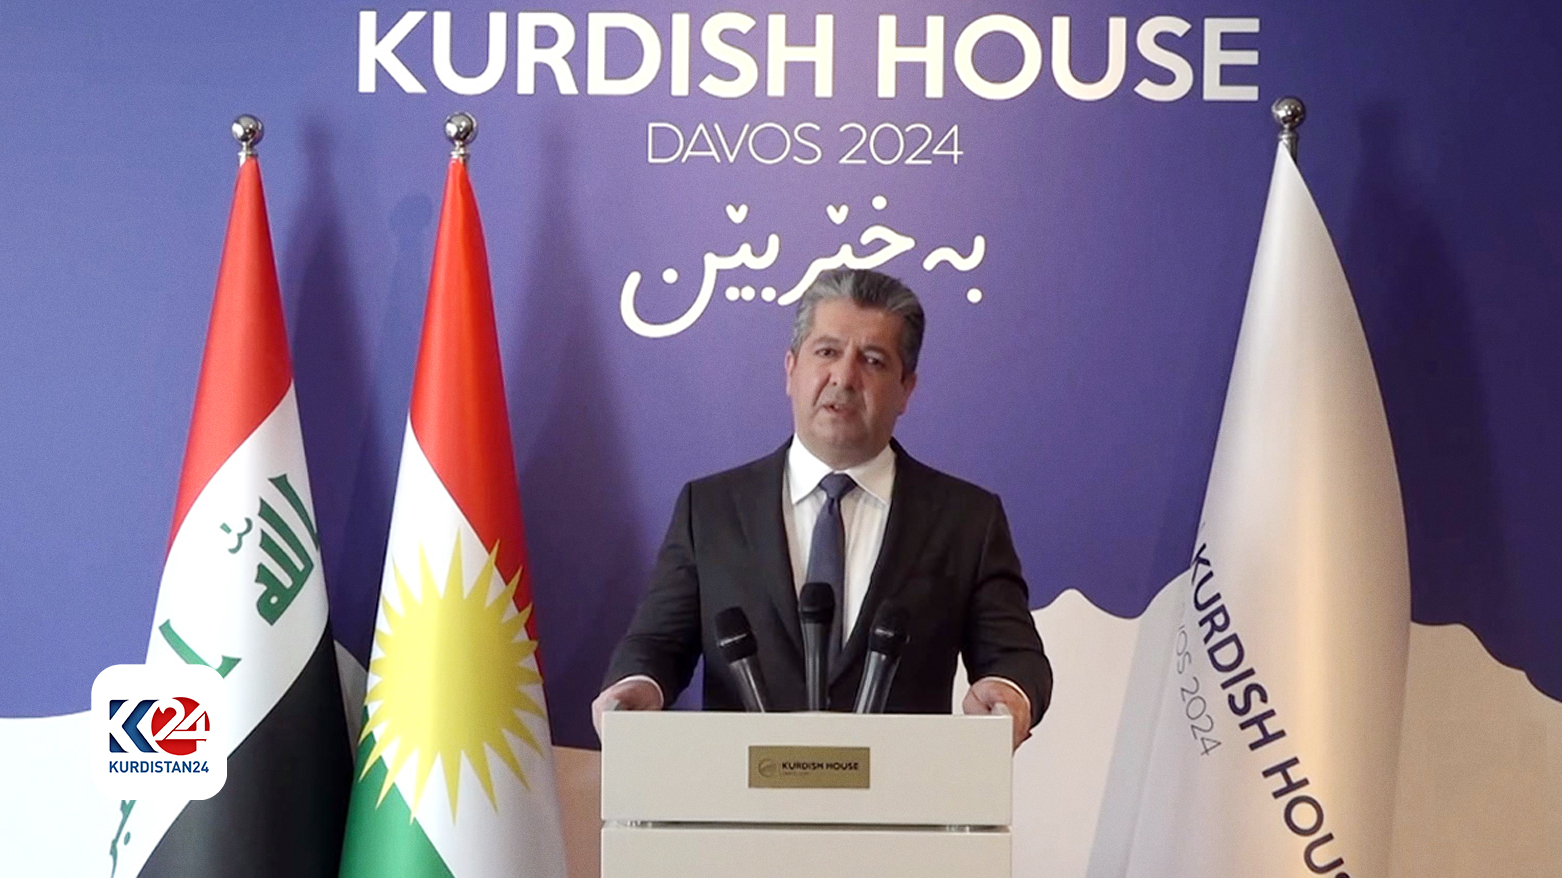 مسرور بارزانی، نخست وزیر اقلیم کوردستان در کنفرانس خبری ویژه در خانه کوردستان در داووس٢٠٢٤